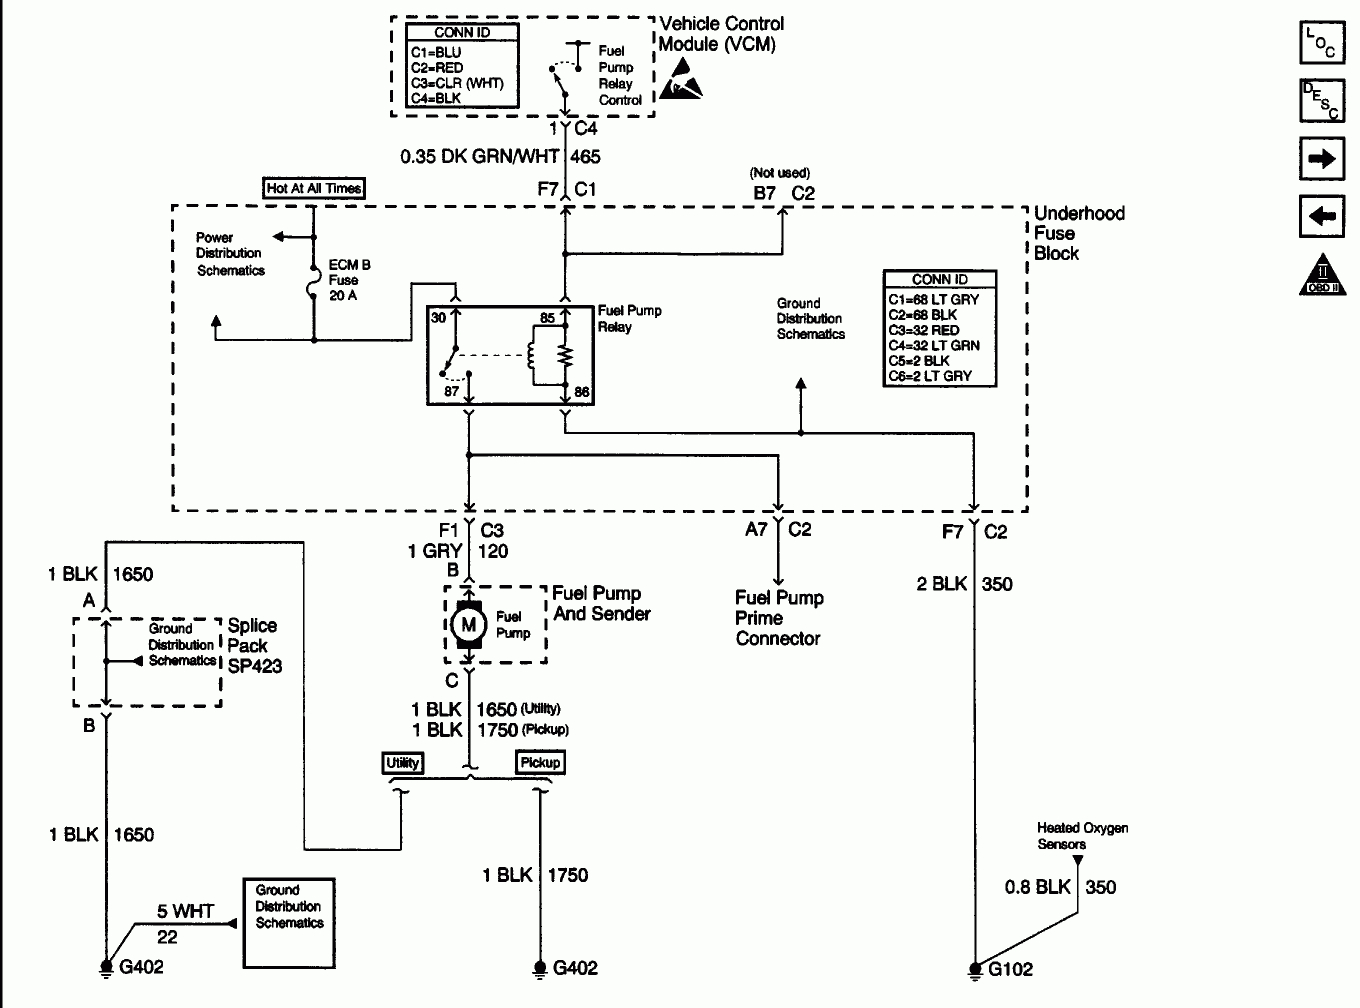 Chevy Silverado Fuel Pump Wiring Diagram - Schema Wiring Diagram - 2000 Chevy Silverado Fuel Pump Wiring Diagram